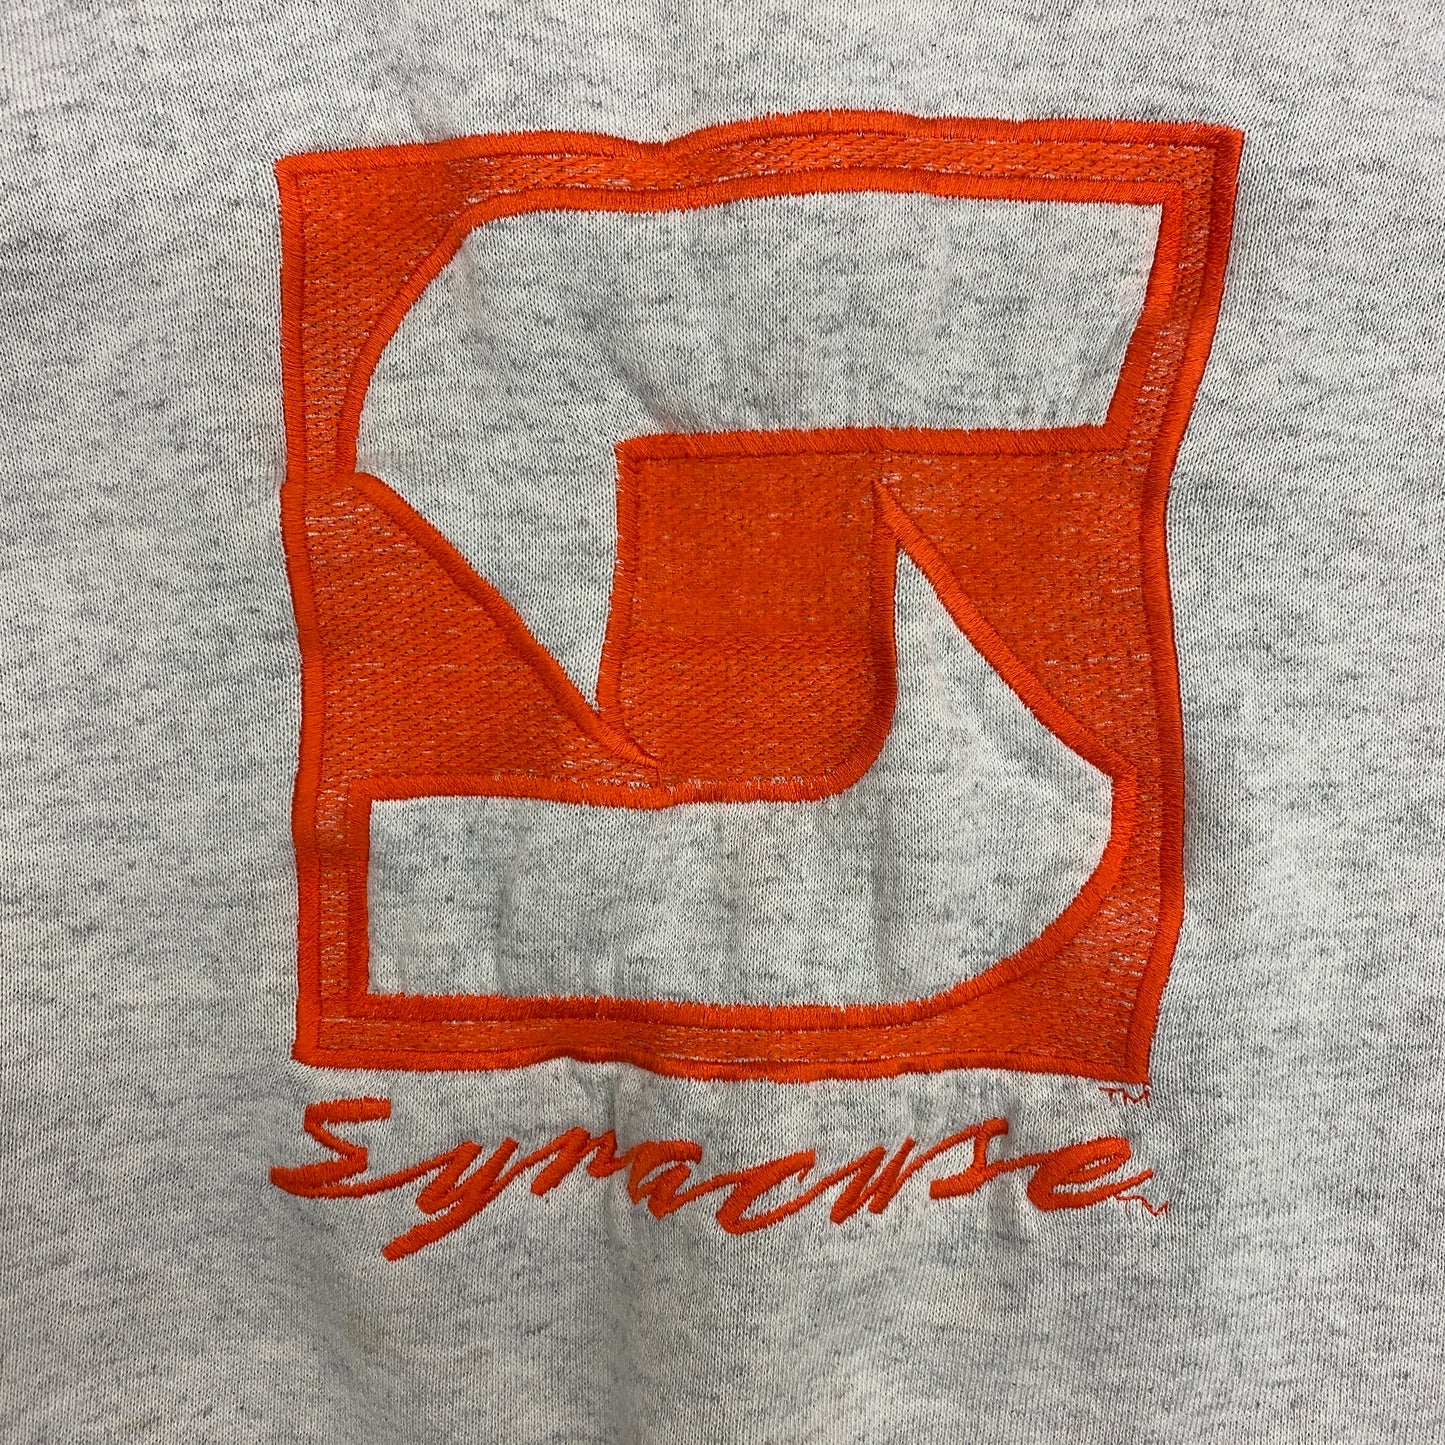 Vintage Syracuse University Orangemen Embroidered Sweatshirt - Size Large